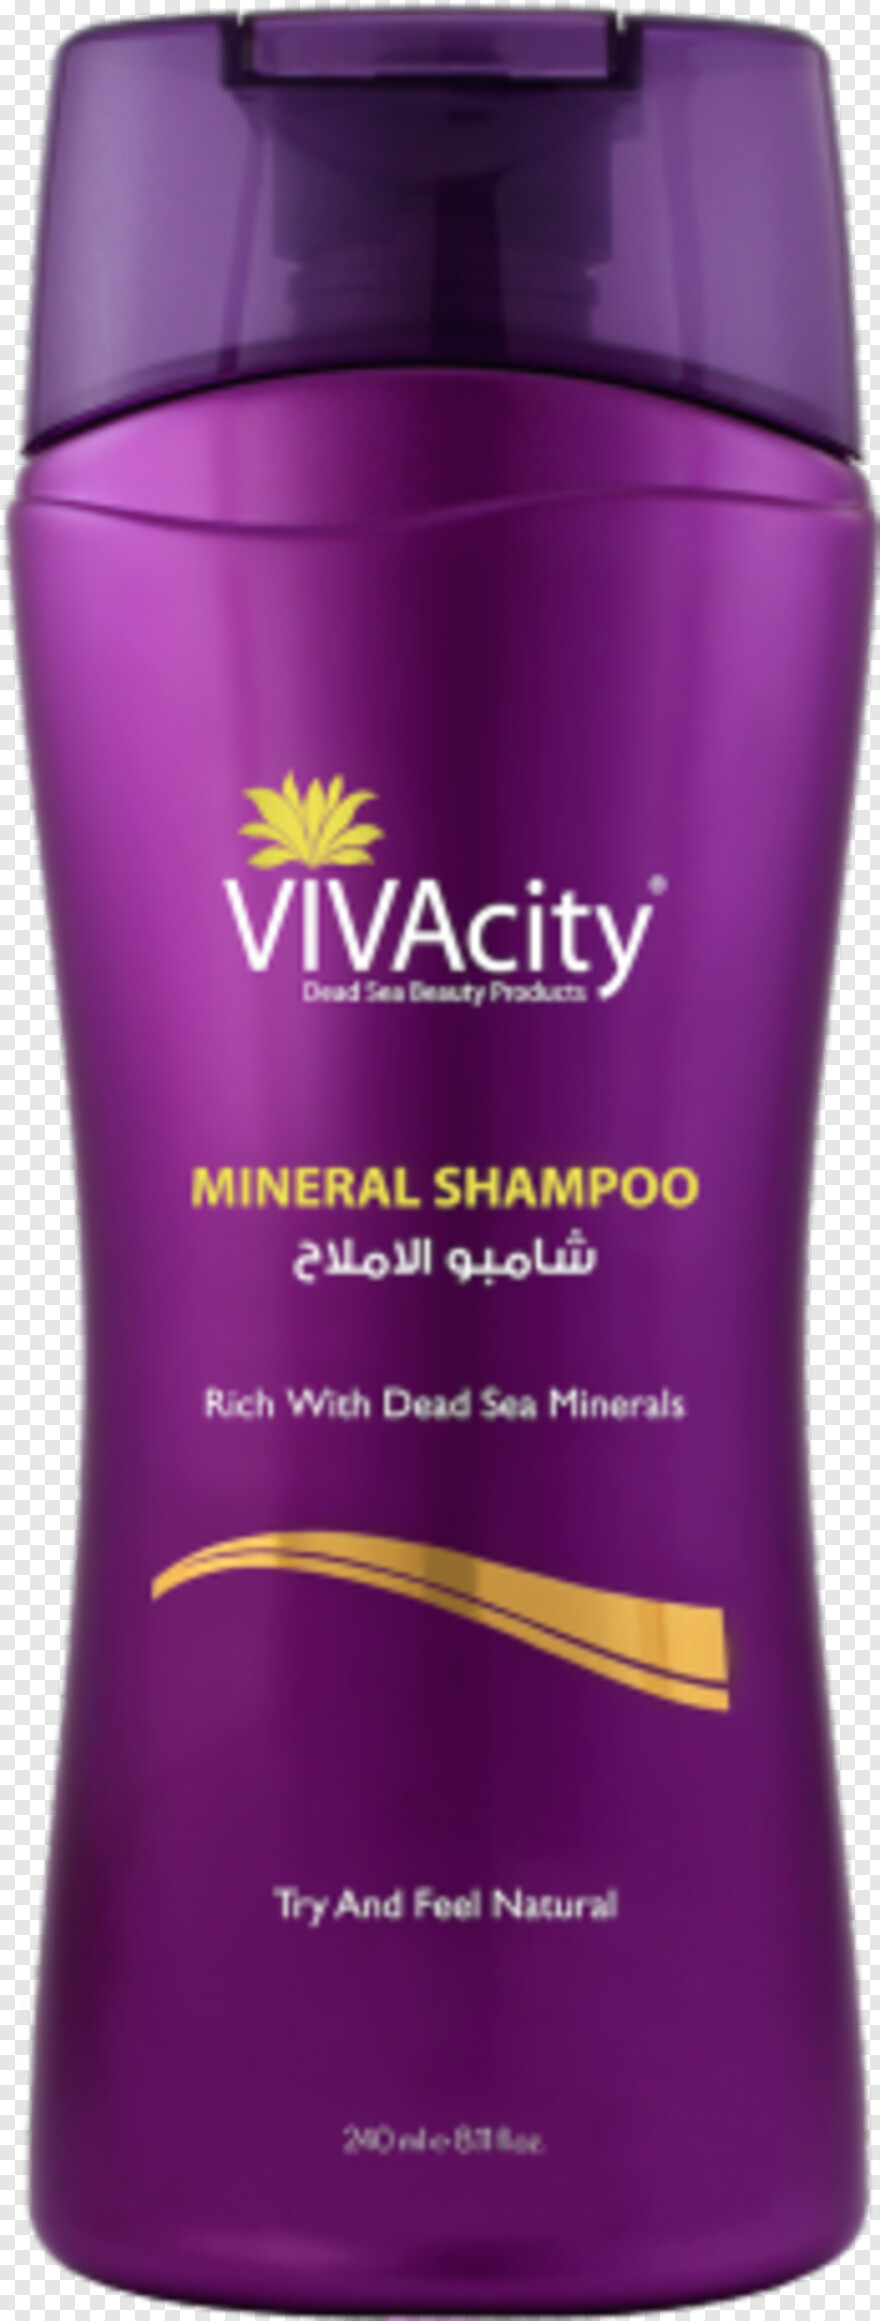 shampoo # 656463